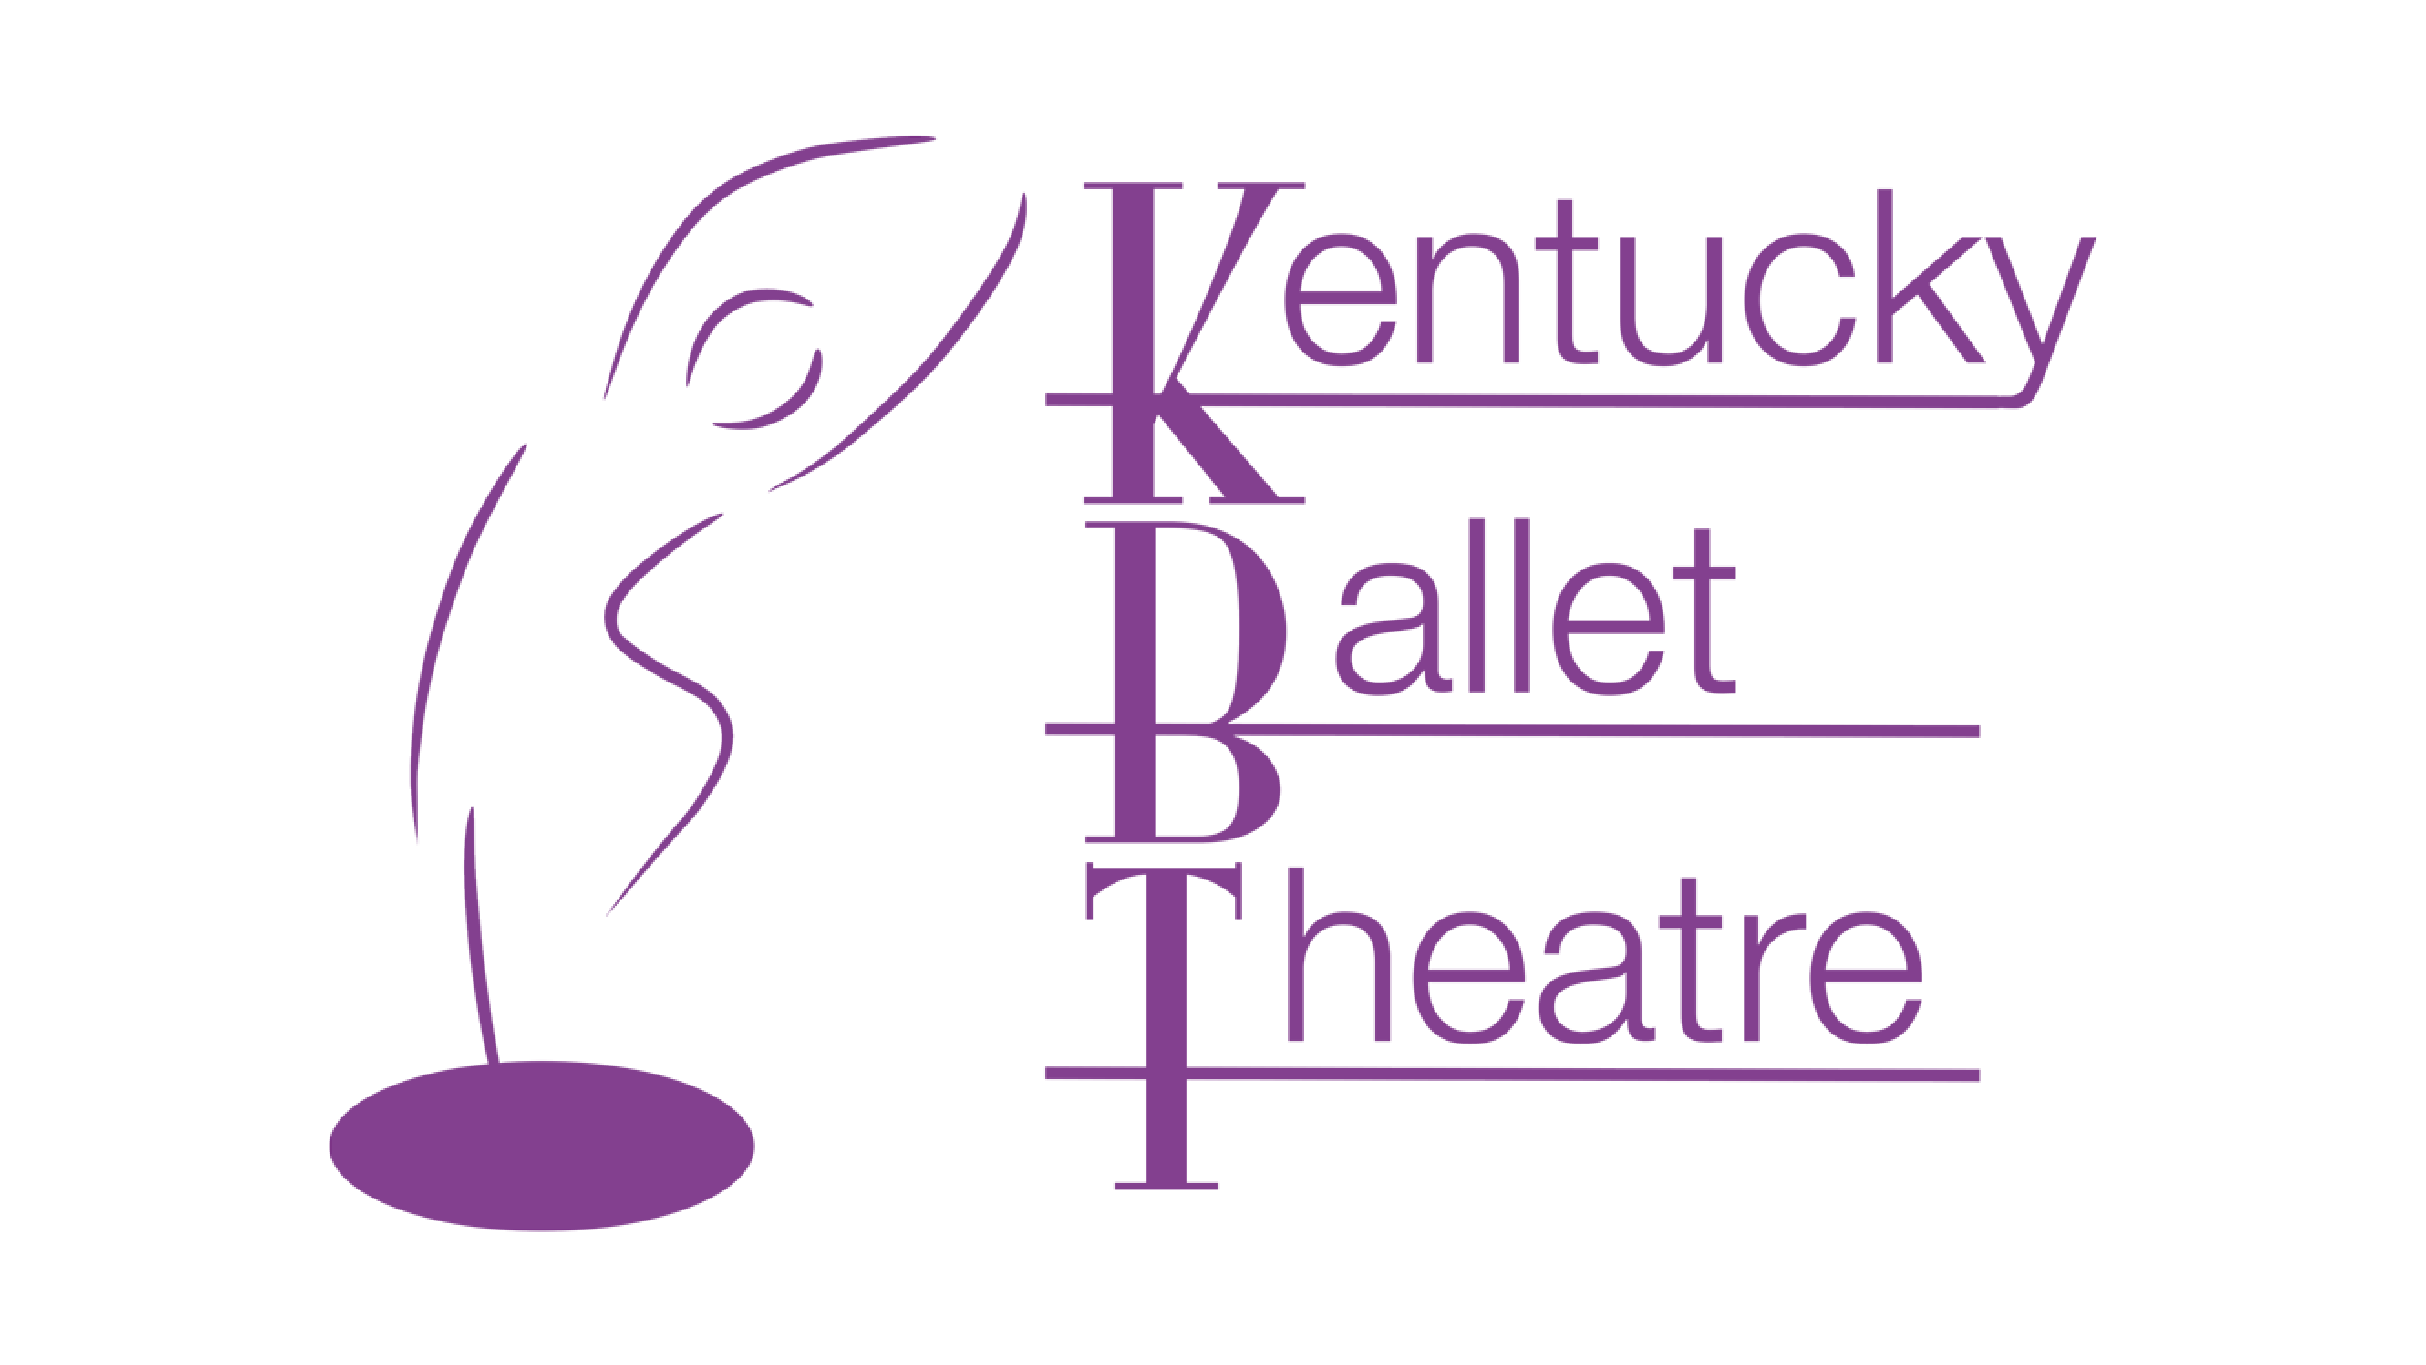 Kentucky Ballet Theatre presale information on freepresalepasswords.com